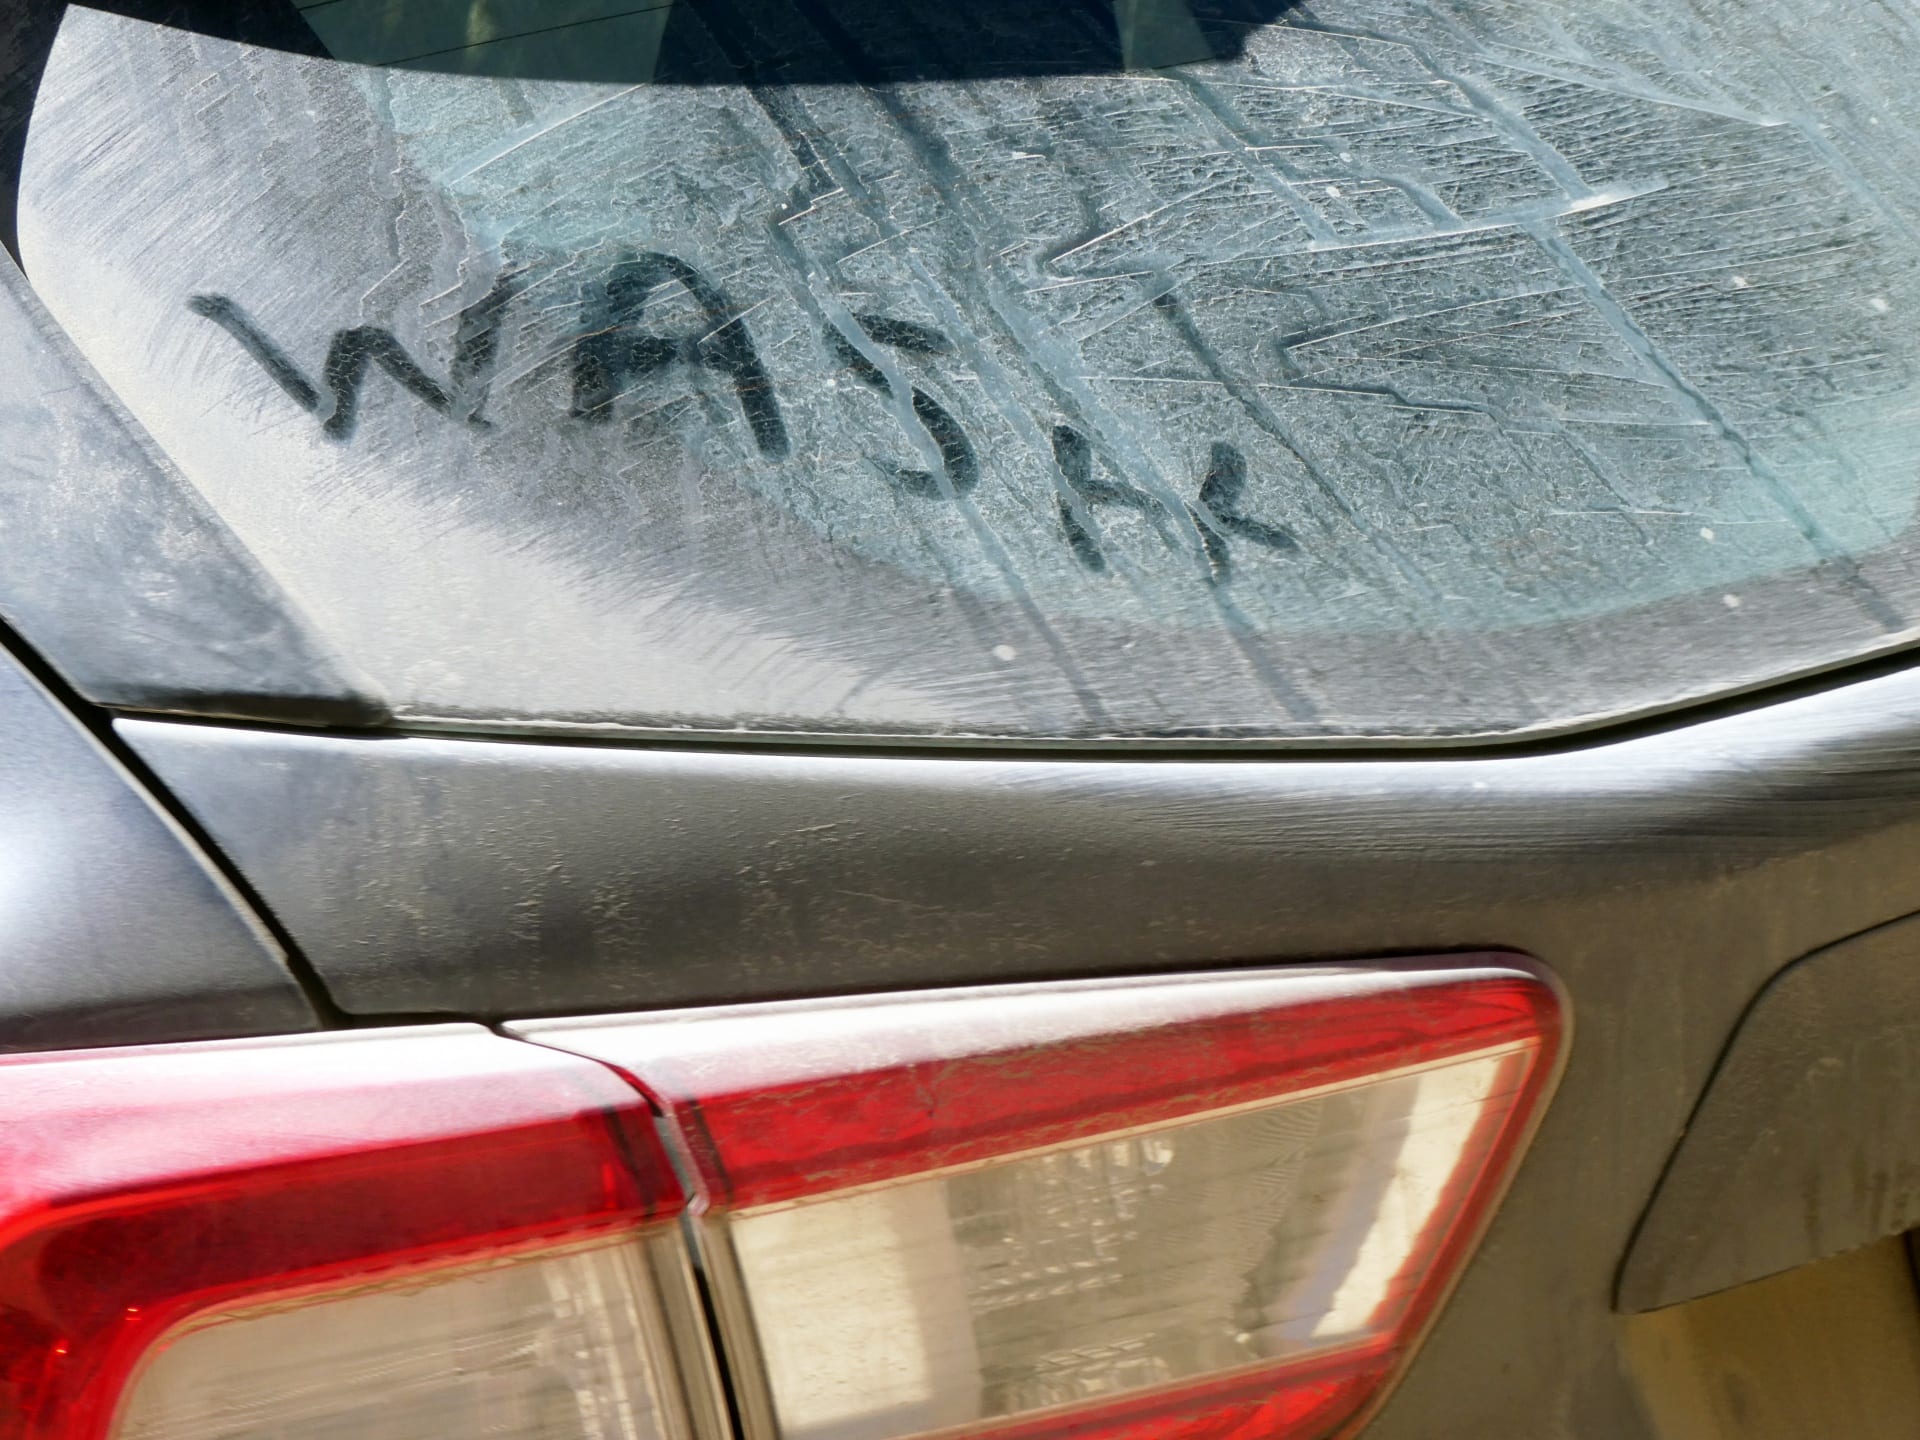 Get a free car wash — no, really!